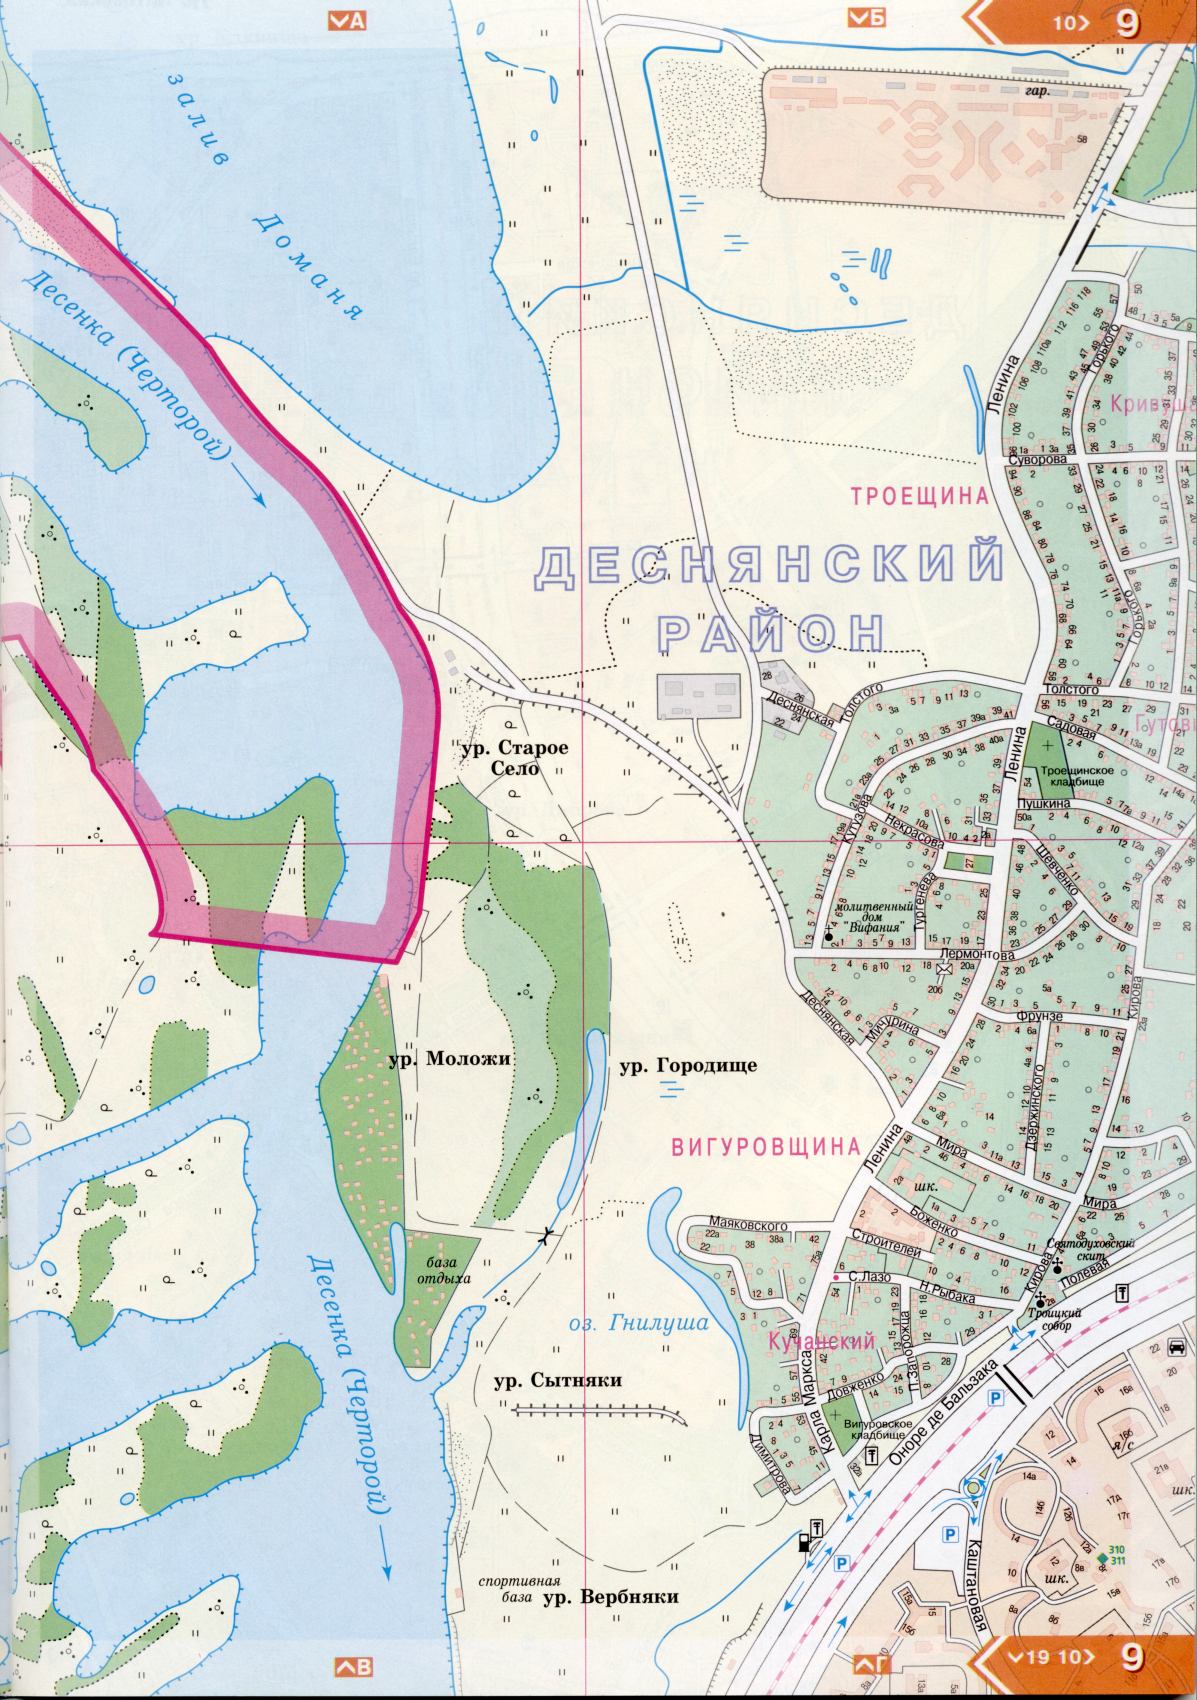 Kiev carte détails 1cm = 150m pour 45 feuilles. Carte de Kiev de l'atlas des routes. Télécharger une carte détaillée, G0